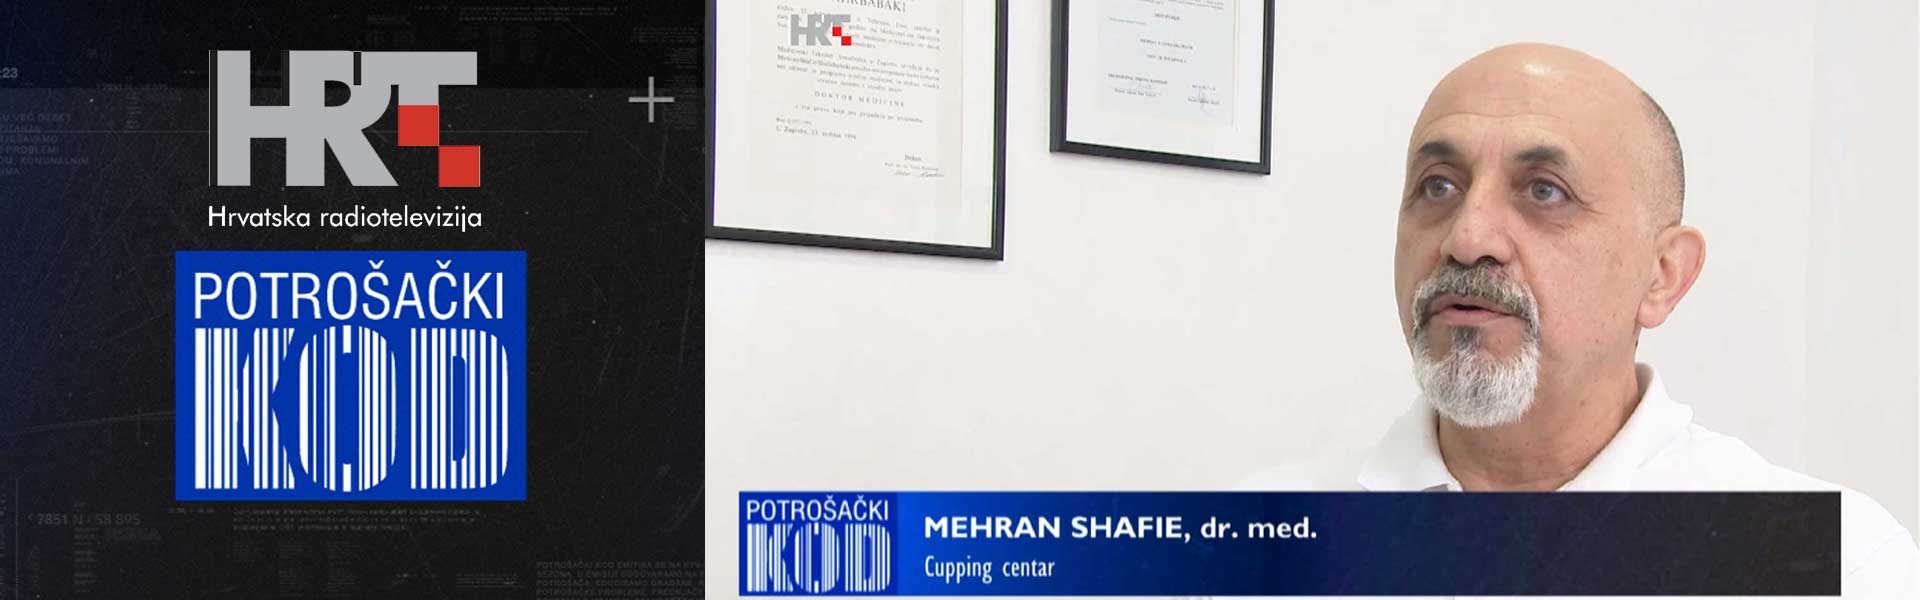 Zagreb, 24.09.2020 - Dr. Mehran Shafie Shahrbabaki otvorio je Cupping centar na zagrebackom Vrbiku